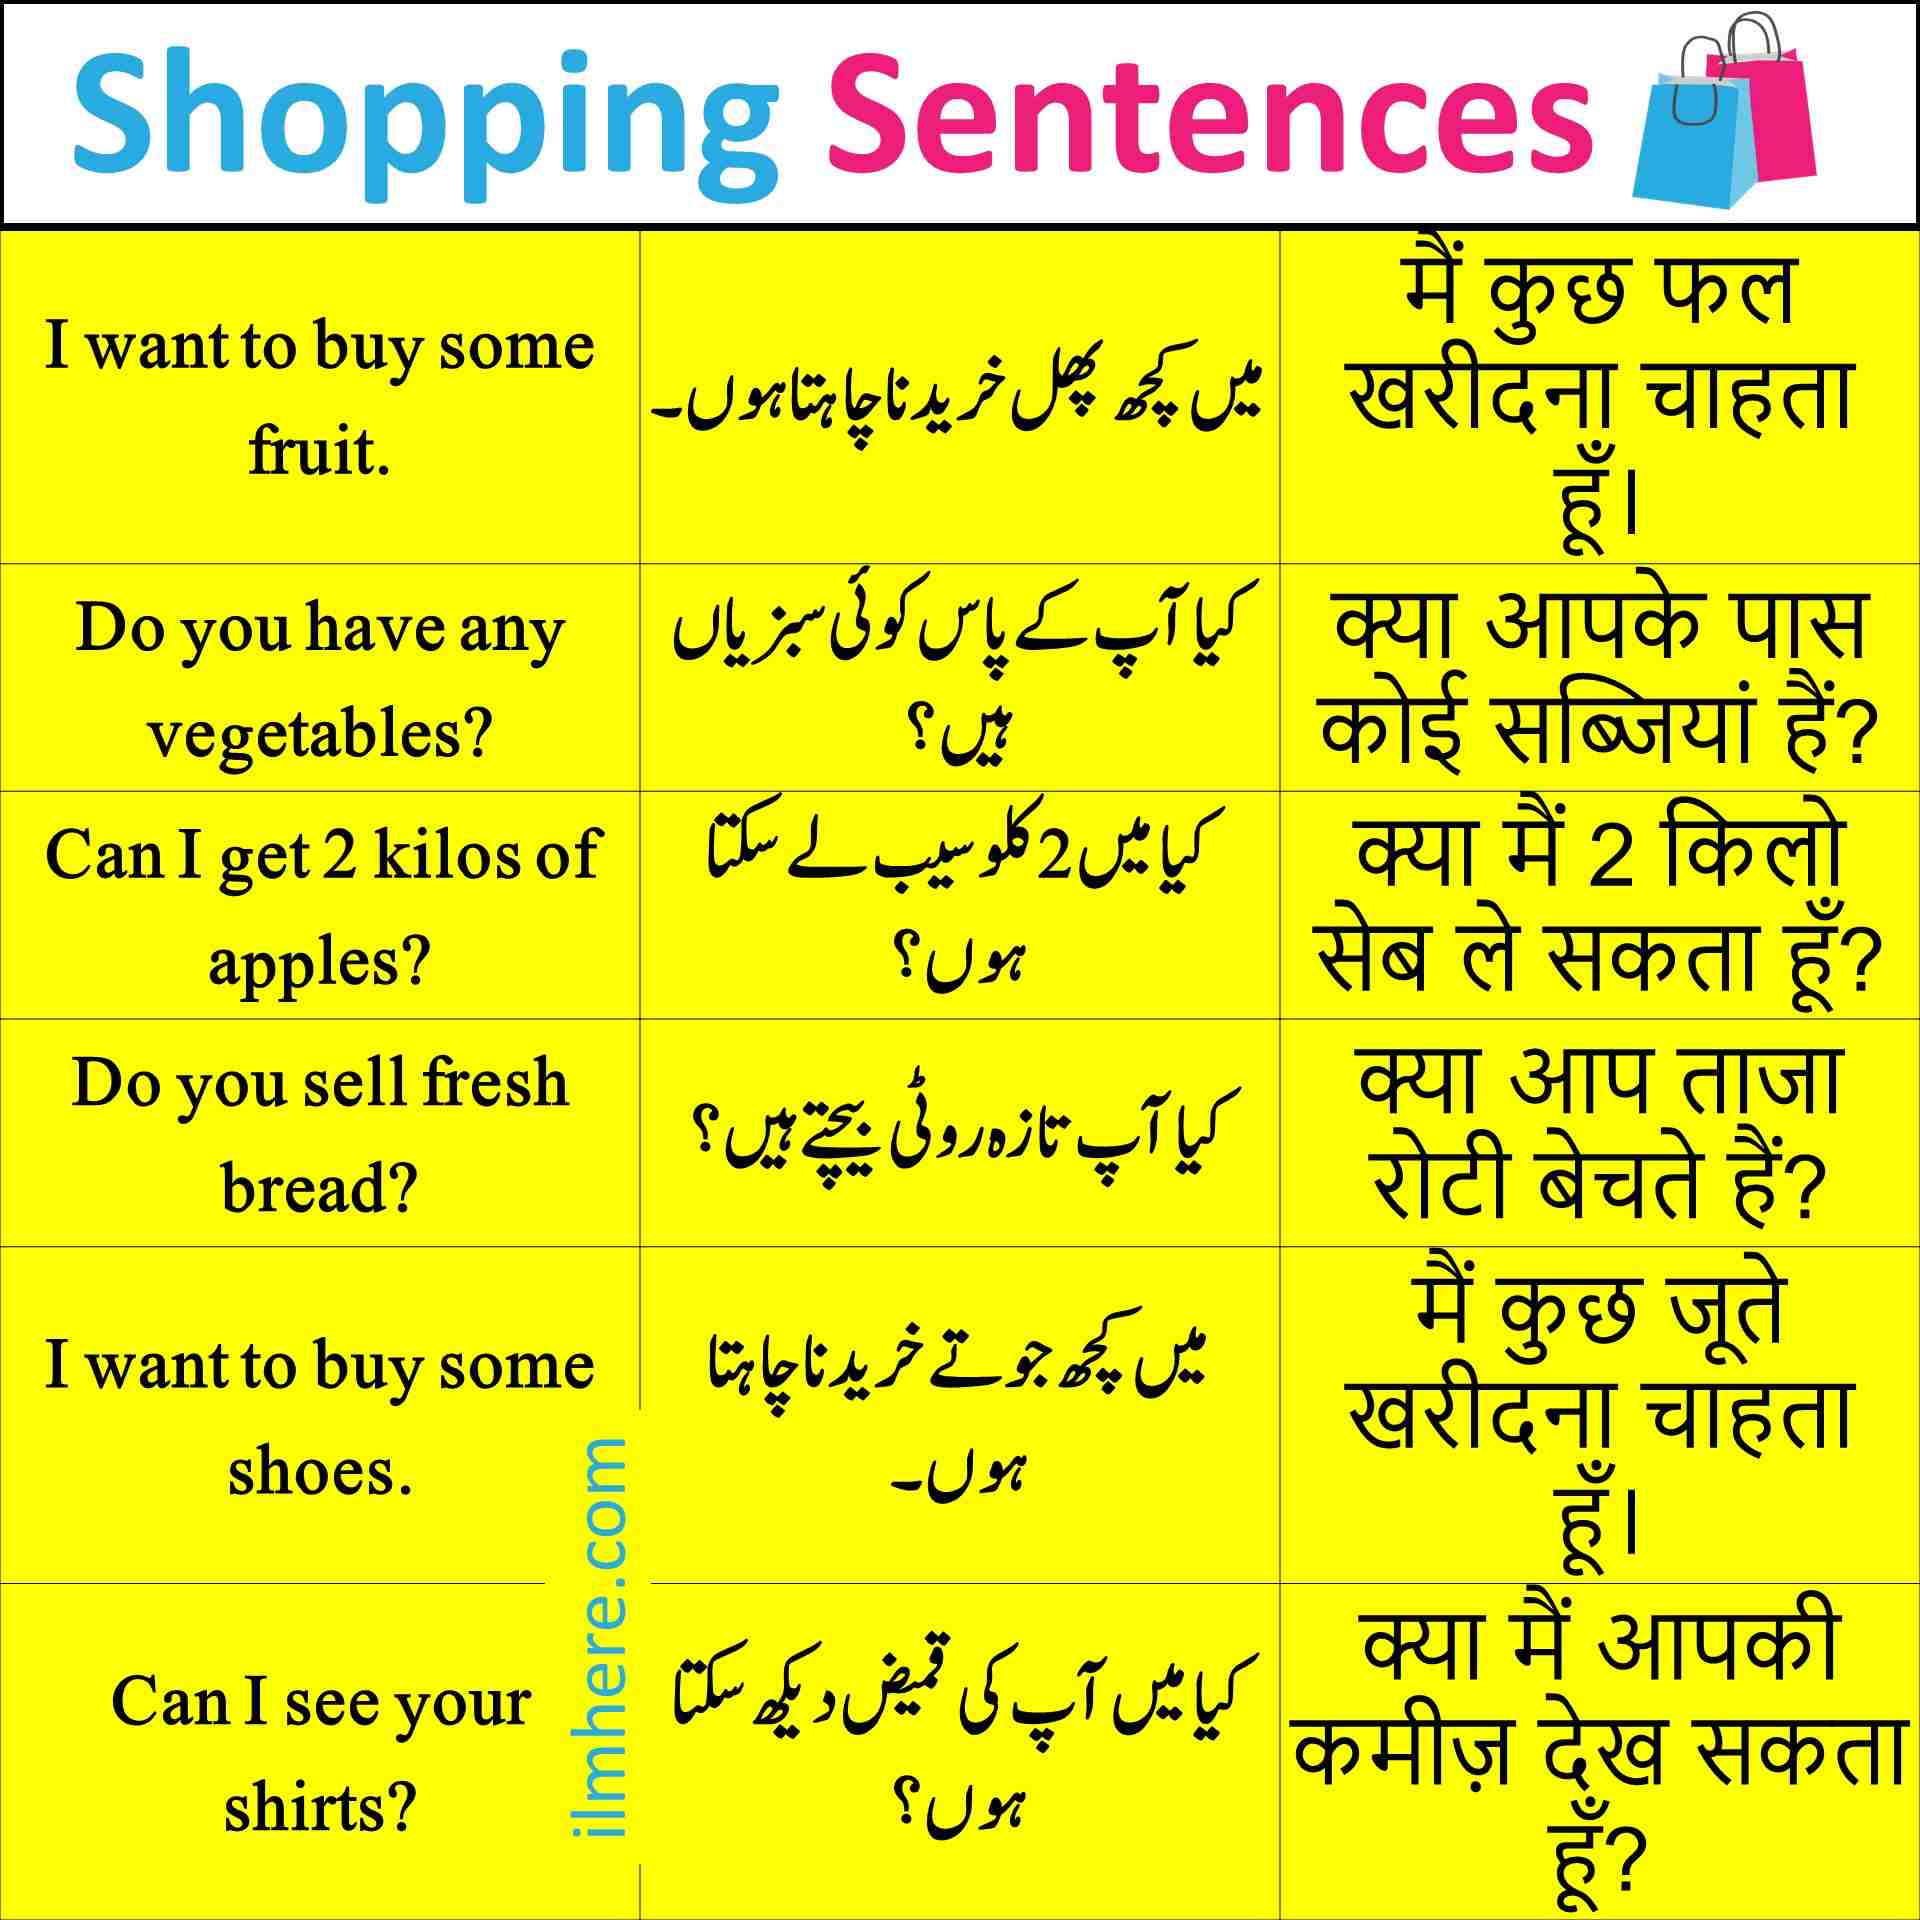 Shopping Sentences